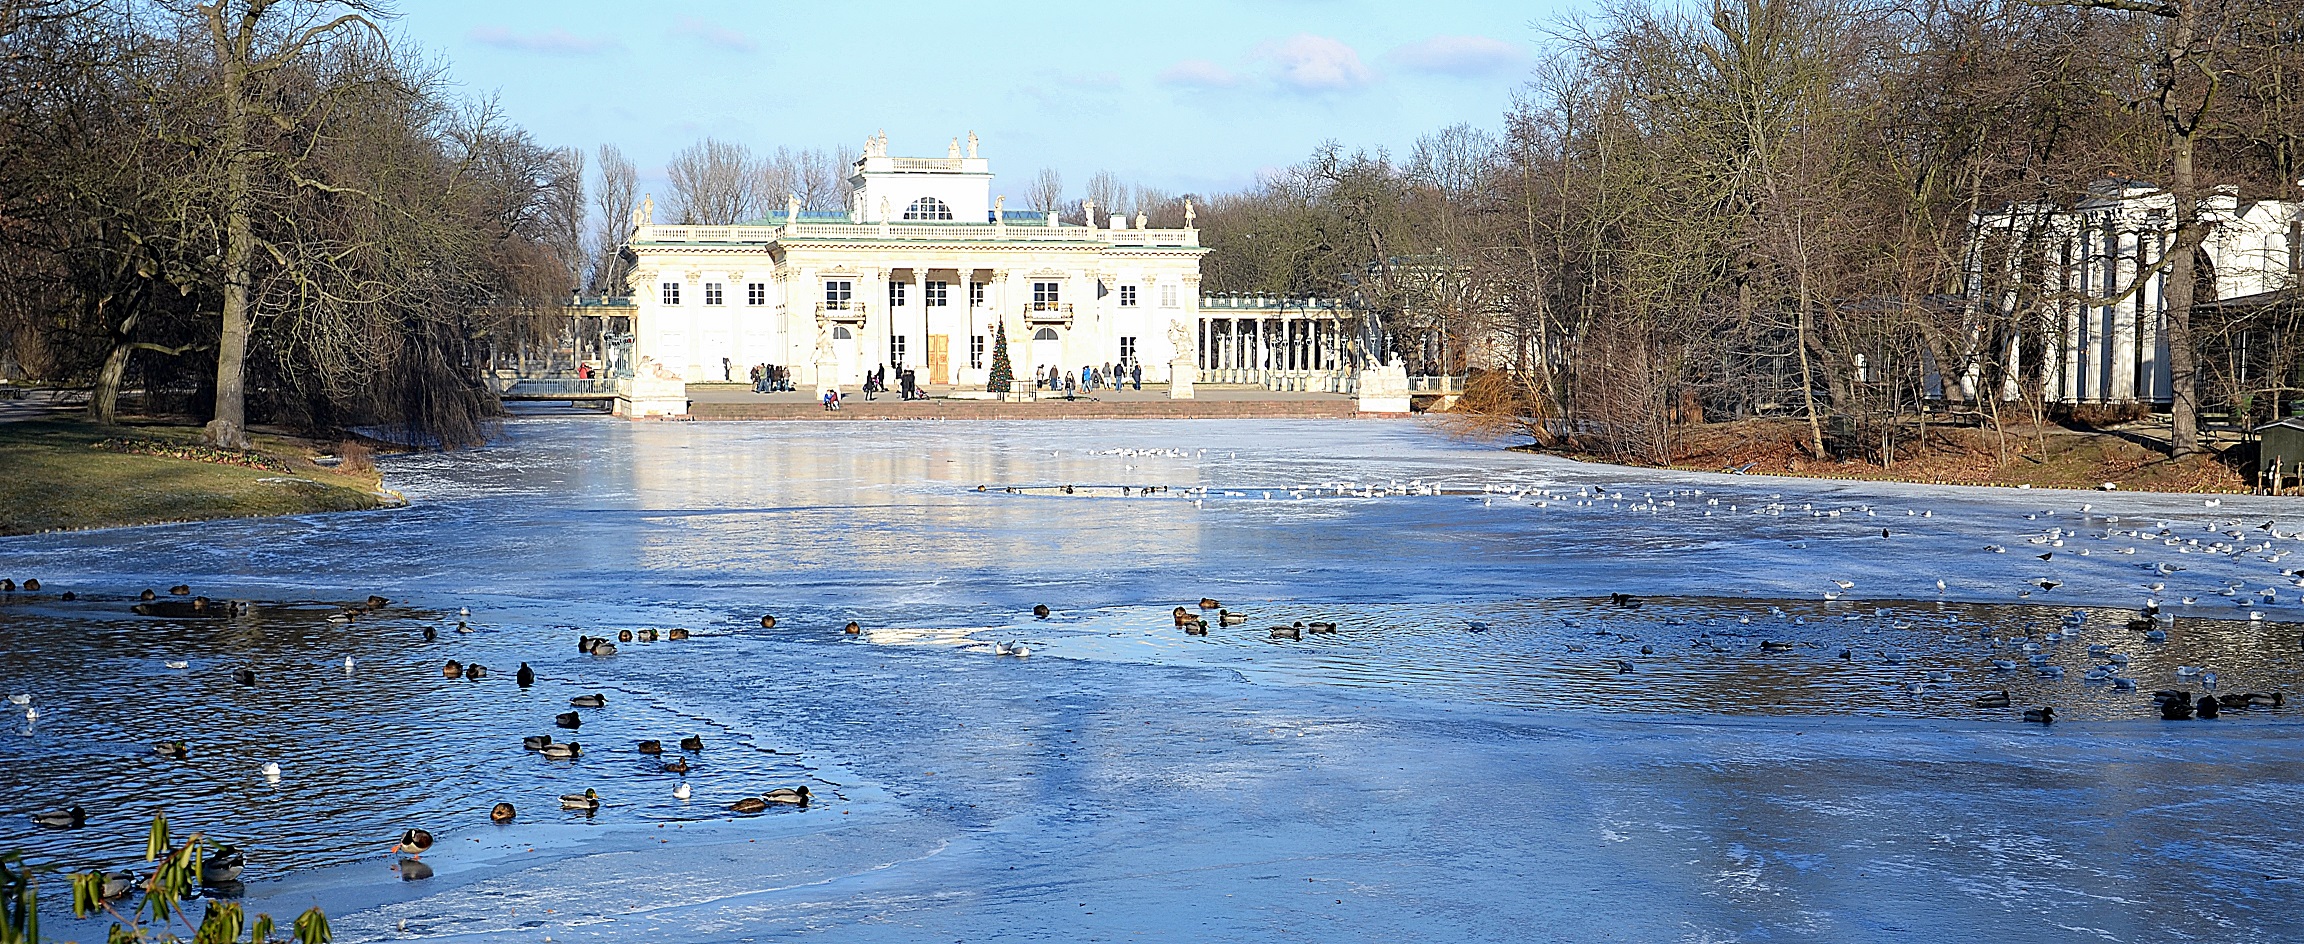 Foto: Palacio en la Isla, Łazienki Park - Varsovia (Masovian Voivodeship), Polonia